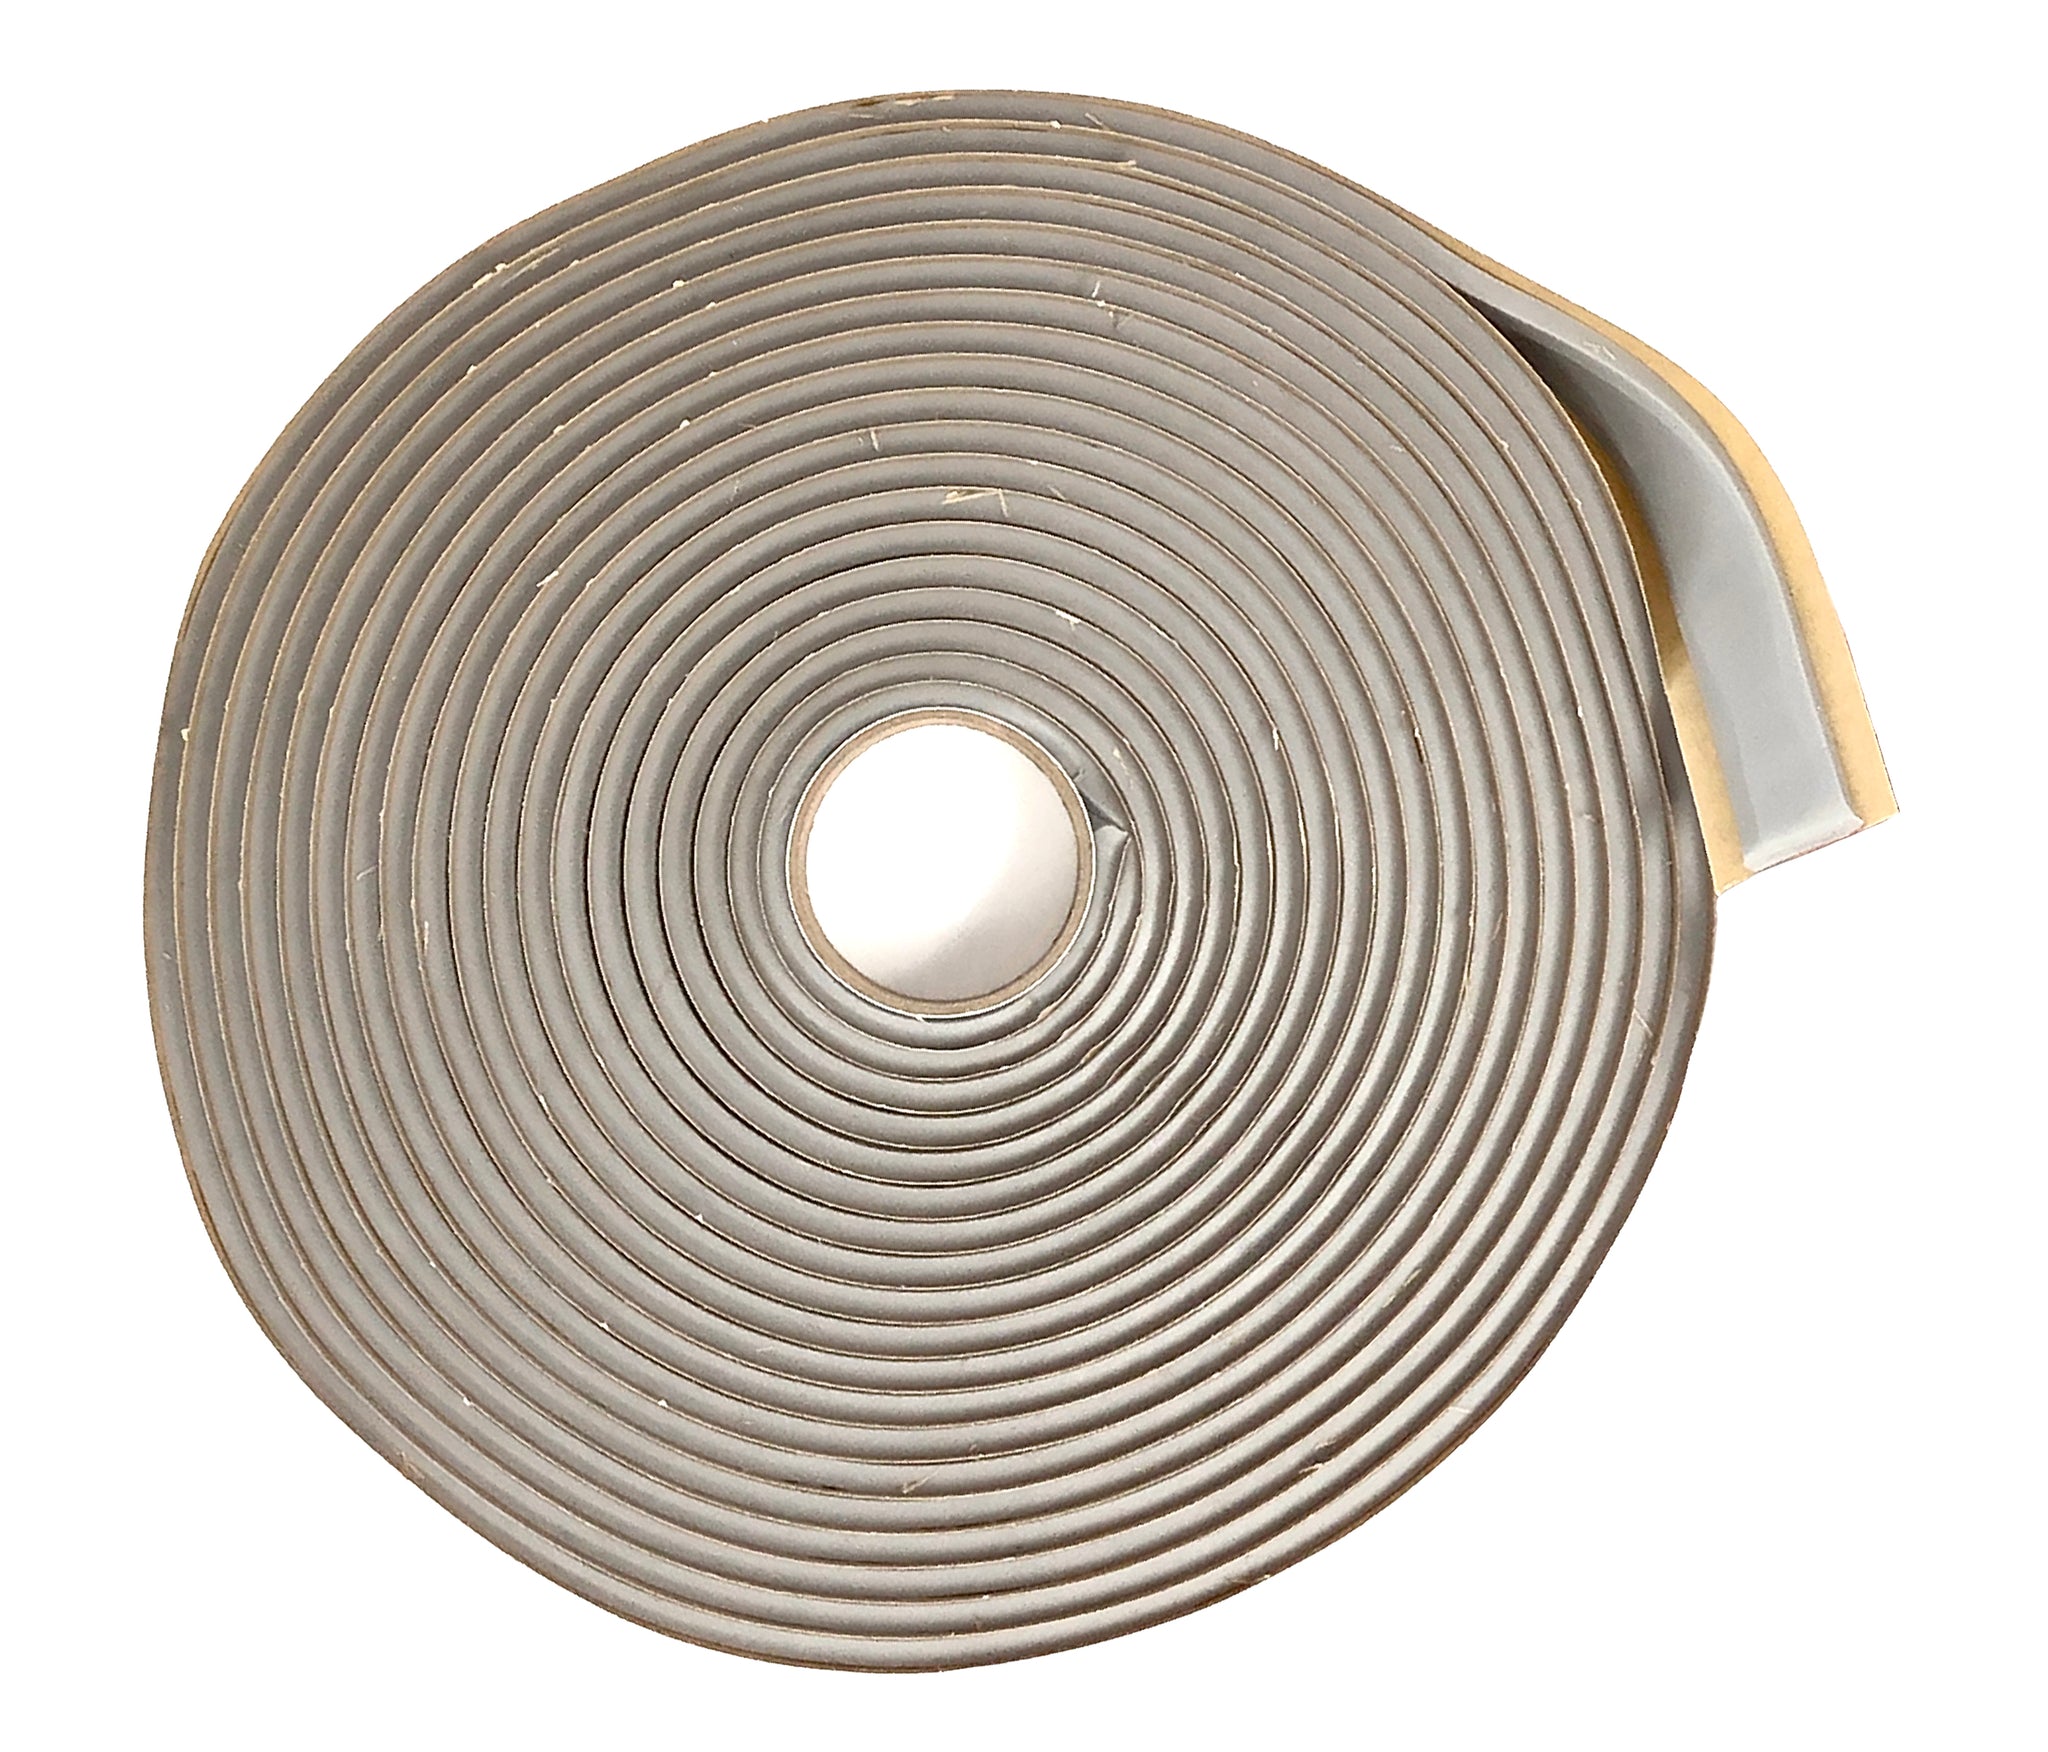 GSSI Putty Tape / Butyl Tape 3/4" x 1/8" x 50' Gray (9 rolls of 50ft) Sealant